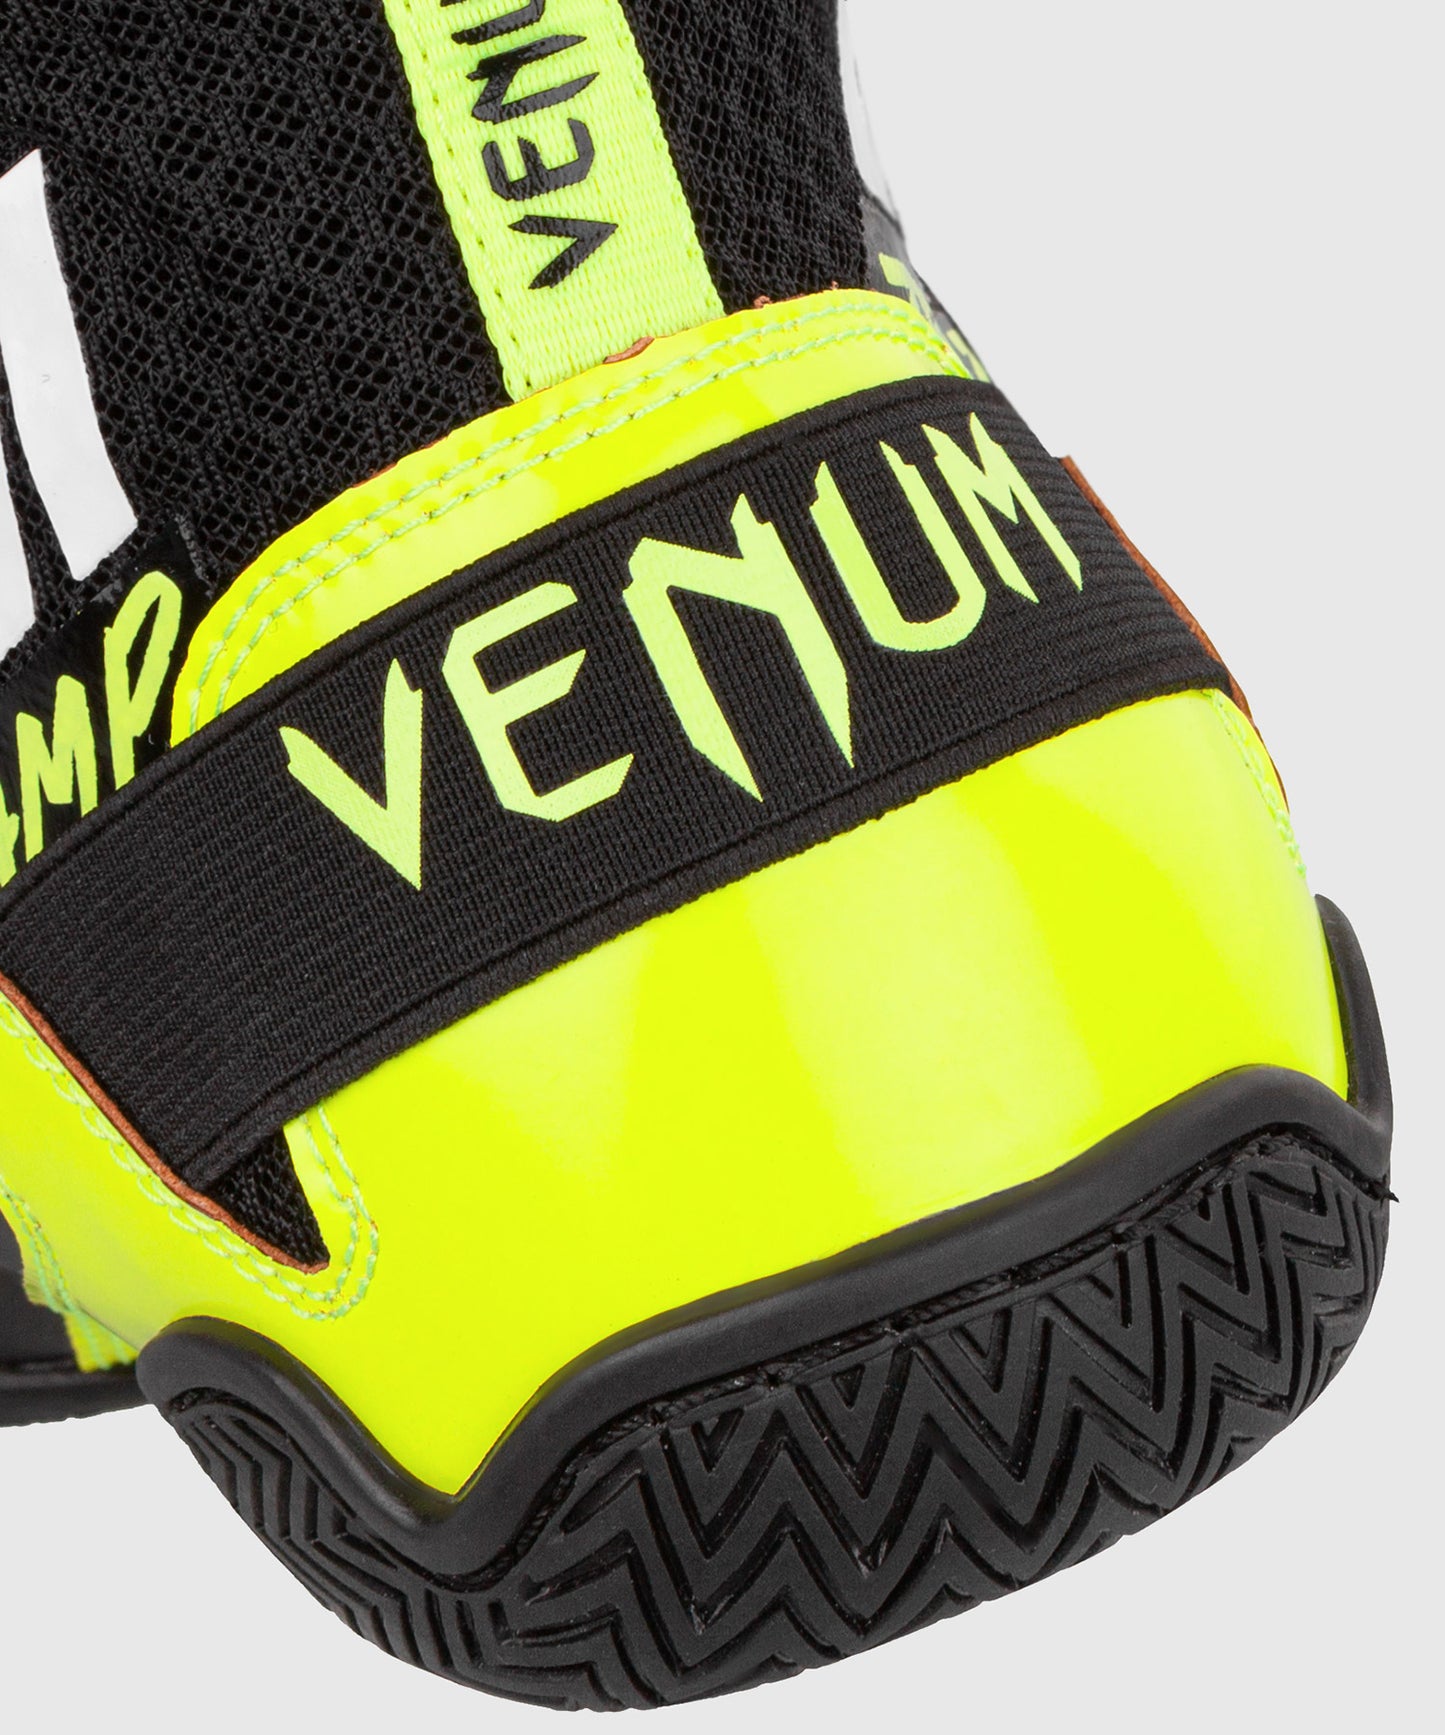 Scarpe da Pugilato Elite VTC 2 Edition Venum - Nero/Giallo neo